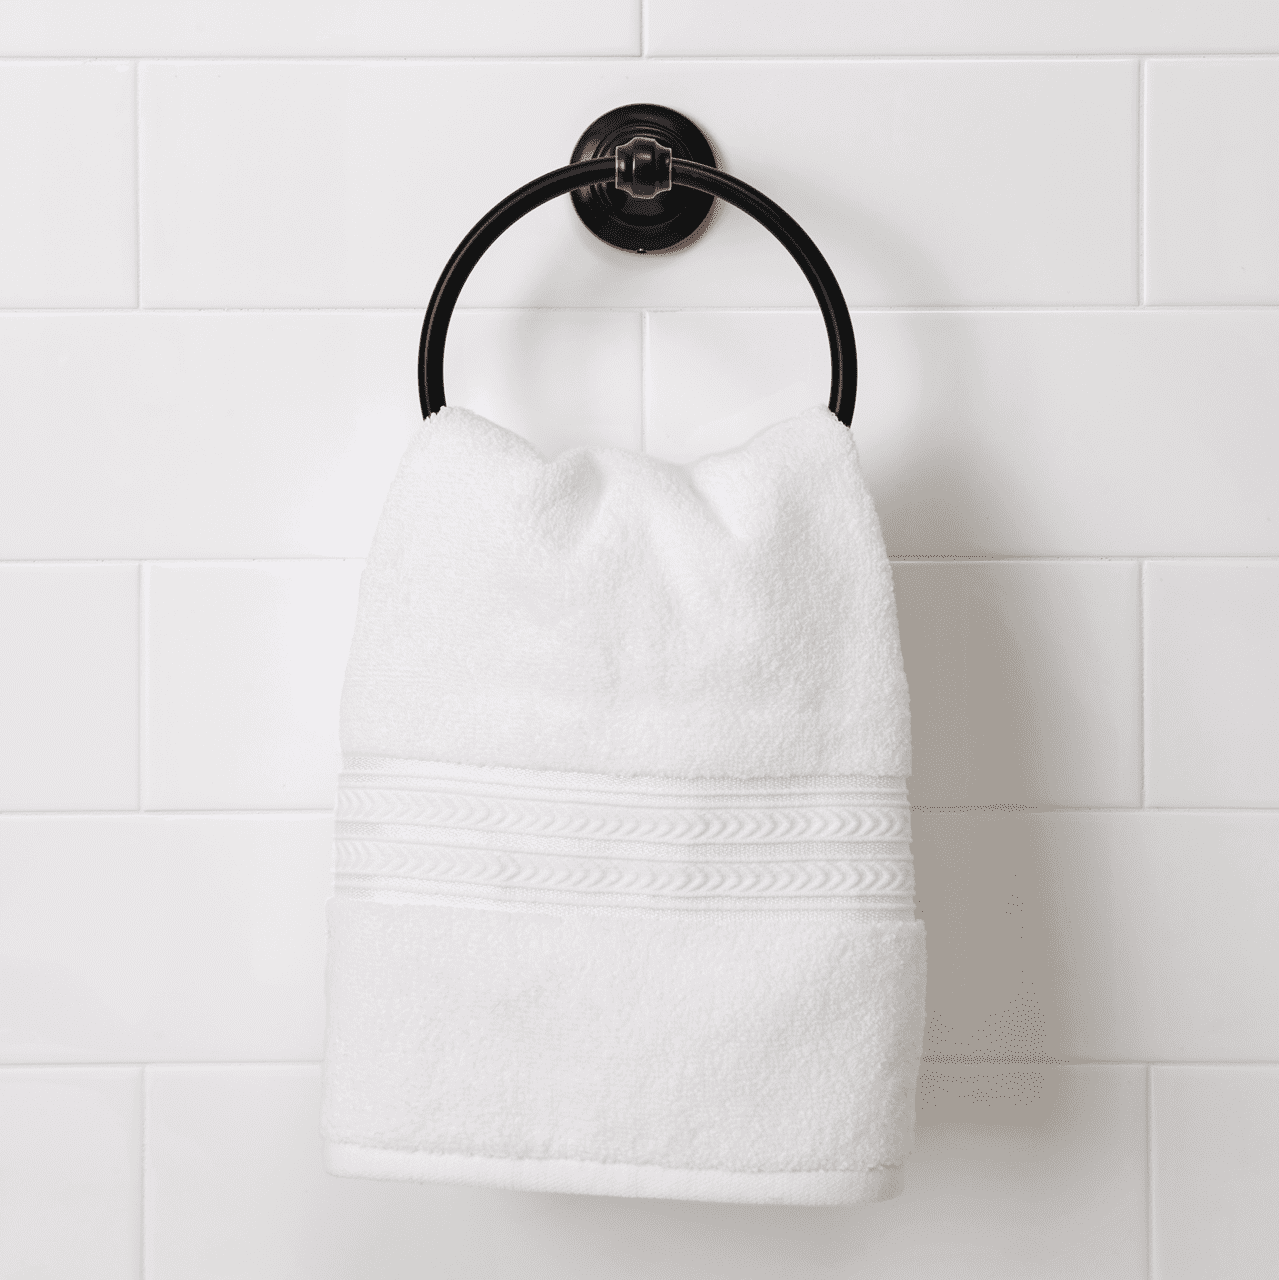 Zerodeko Towel Ring Towel Hanging Ring Bathroom Towel Holders Bathroom Hand  Towel Holder Wall Ring Hook Towel Holder for Bathroom Wall Sticky Hands